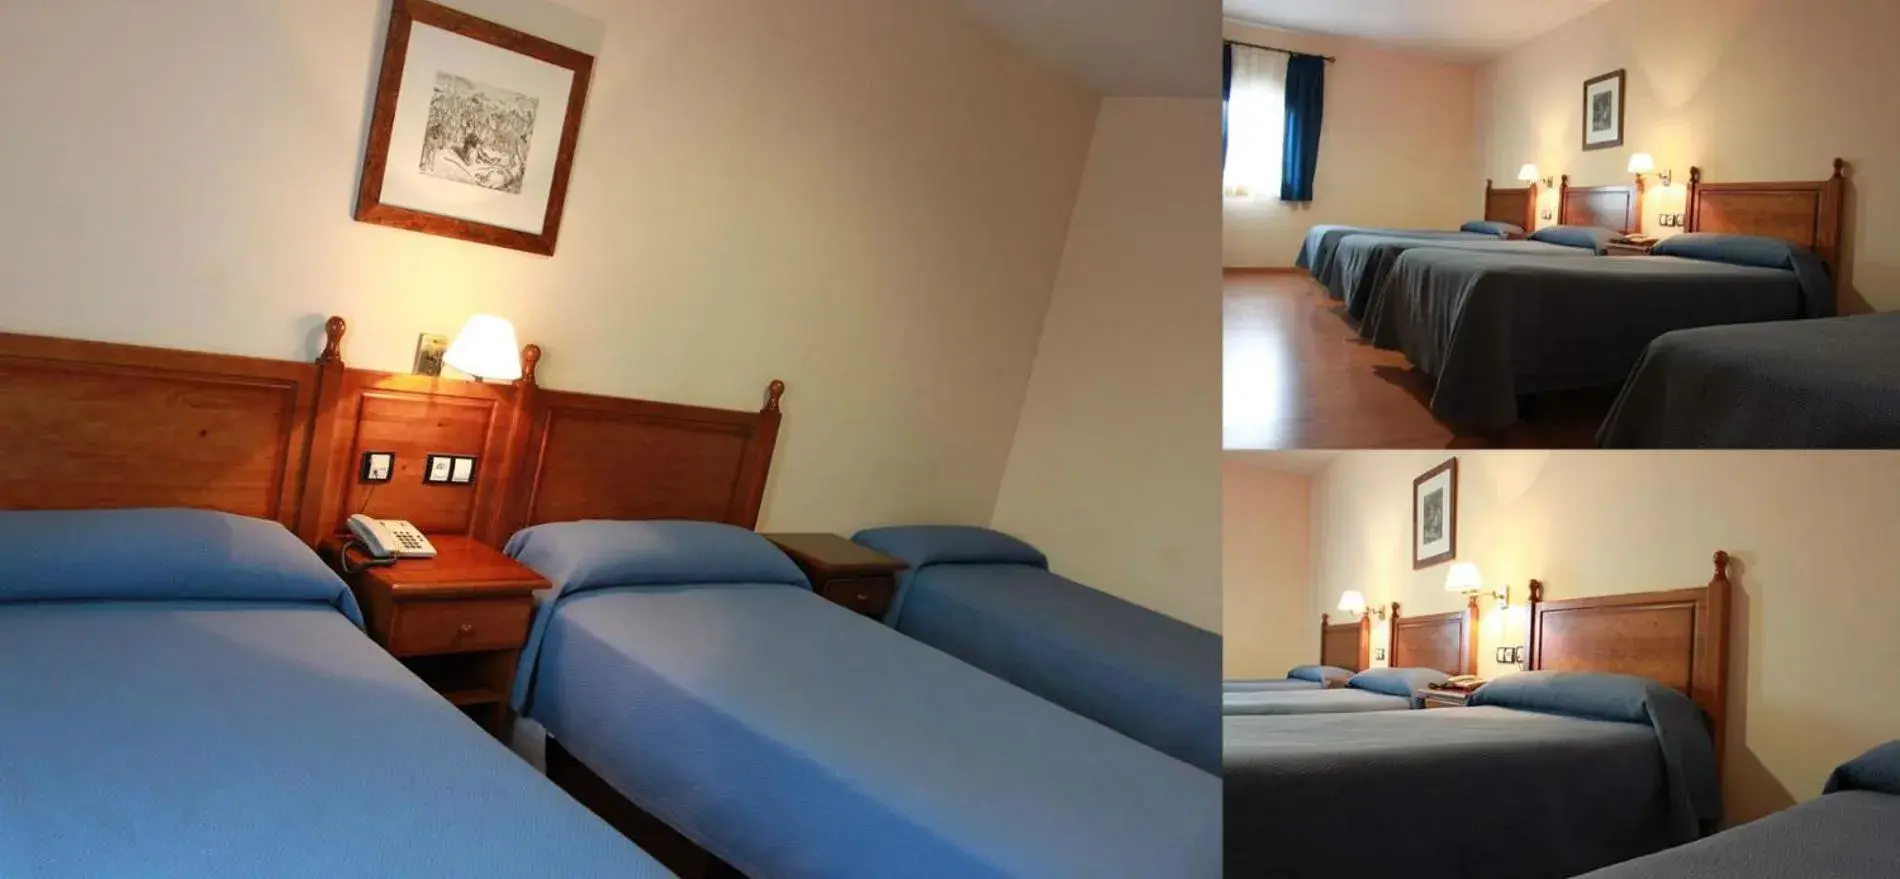 Bed, Room Photo in Hotel Venta El Molino